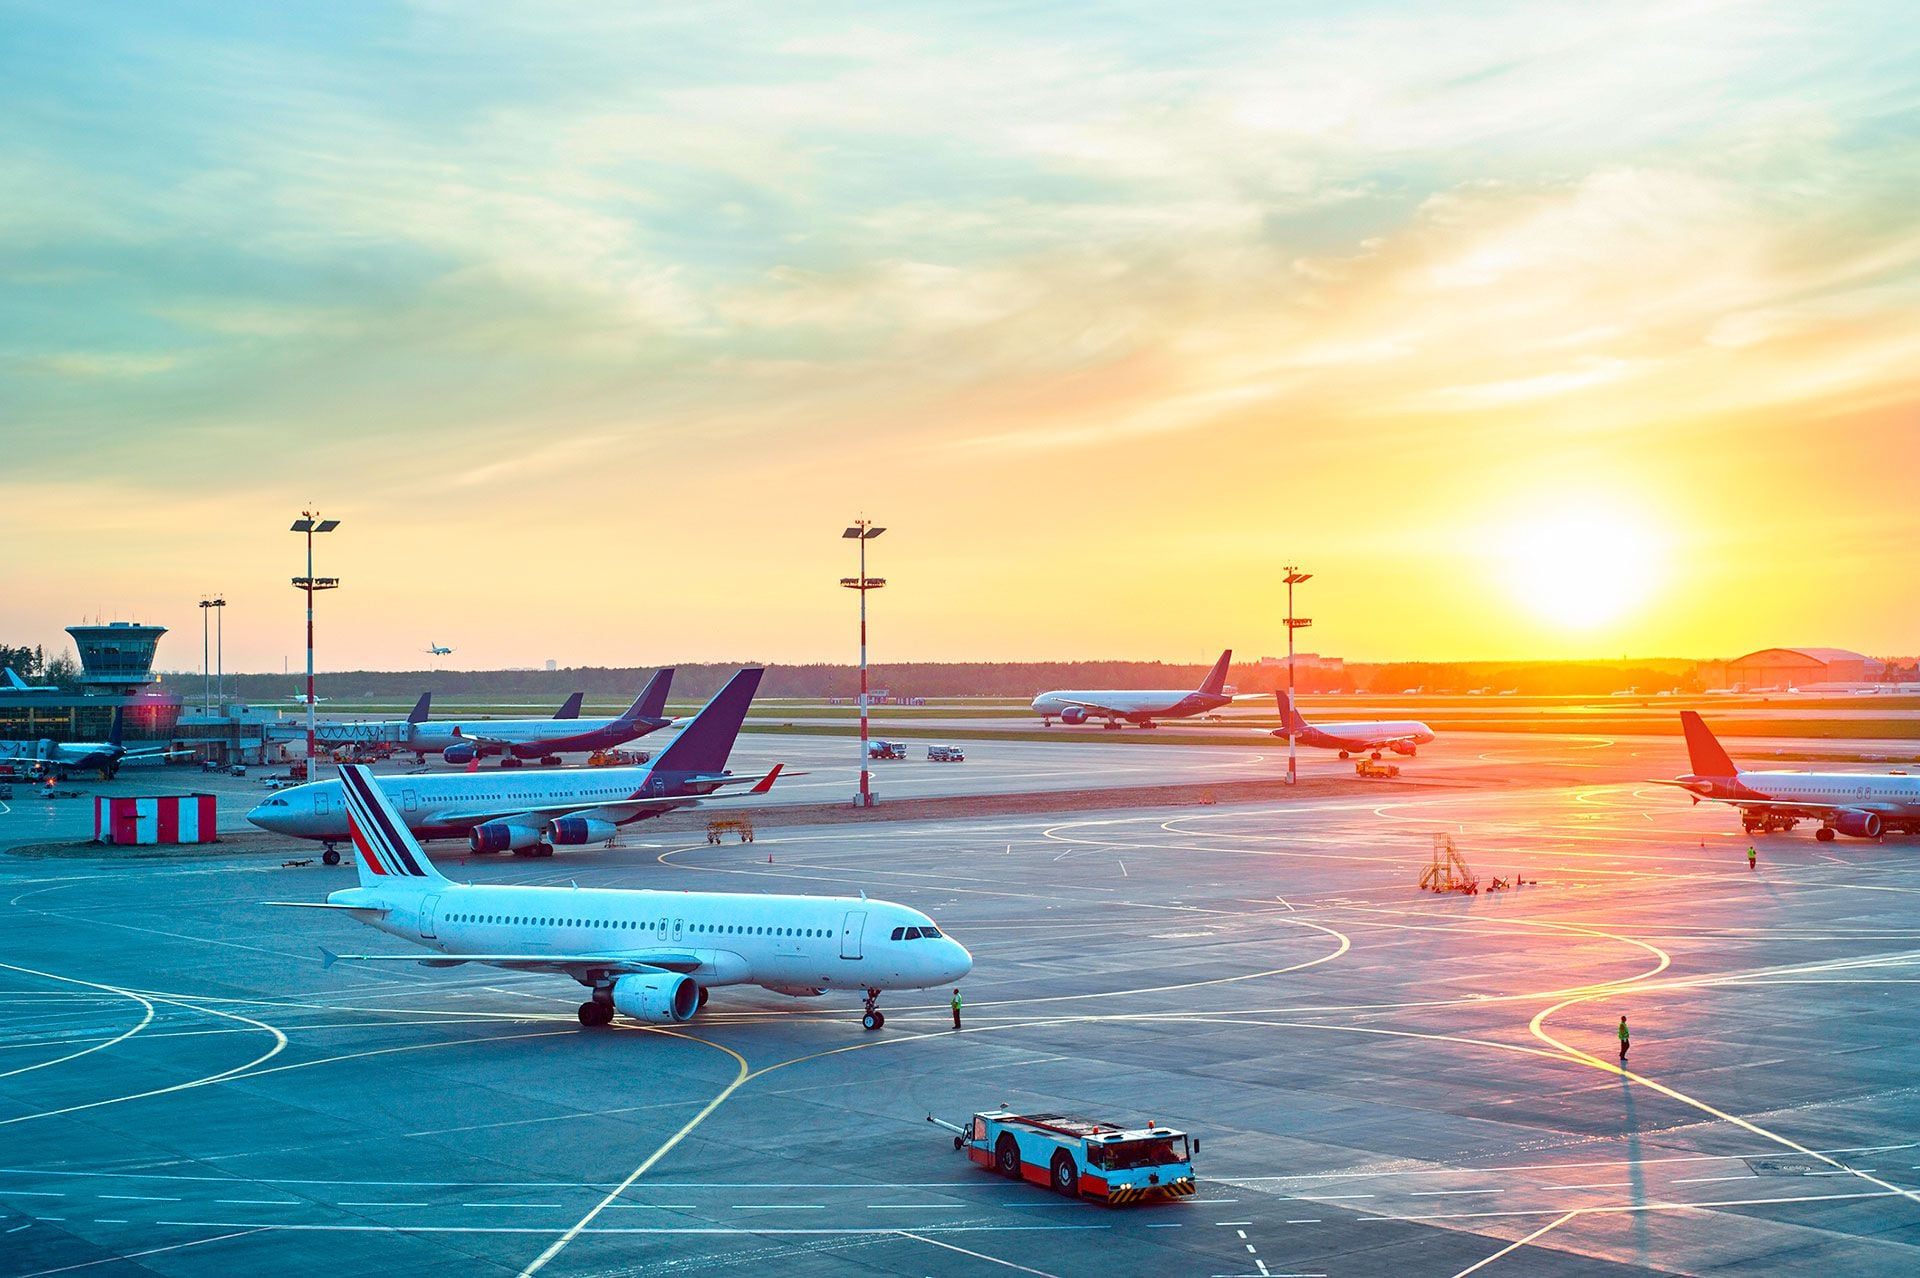 Los aeropuertos. Es importante chequear donde se llega y de dónde sale el avión. Eso muchas veces abarata costos (Shutterstock)